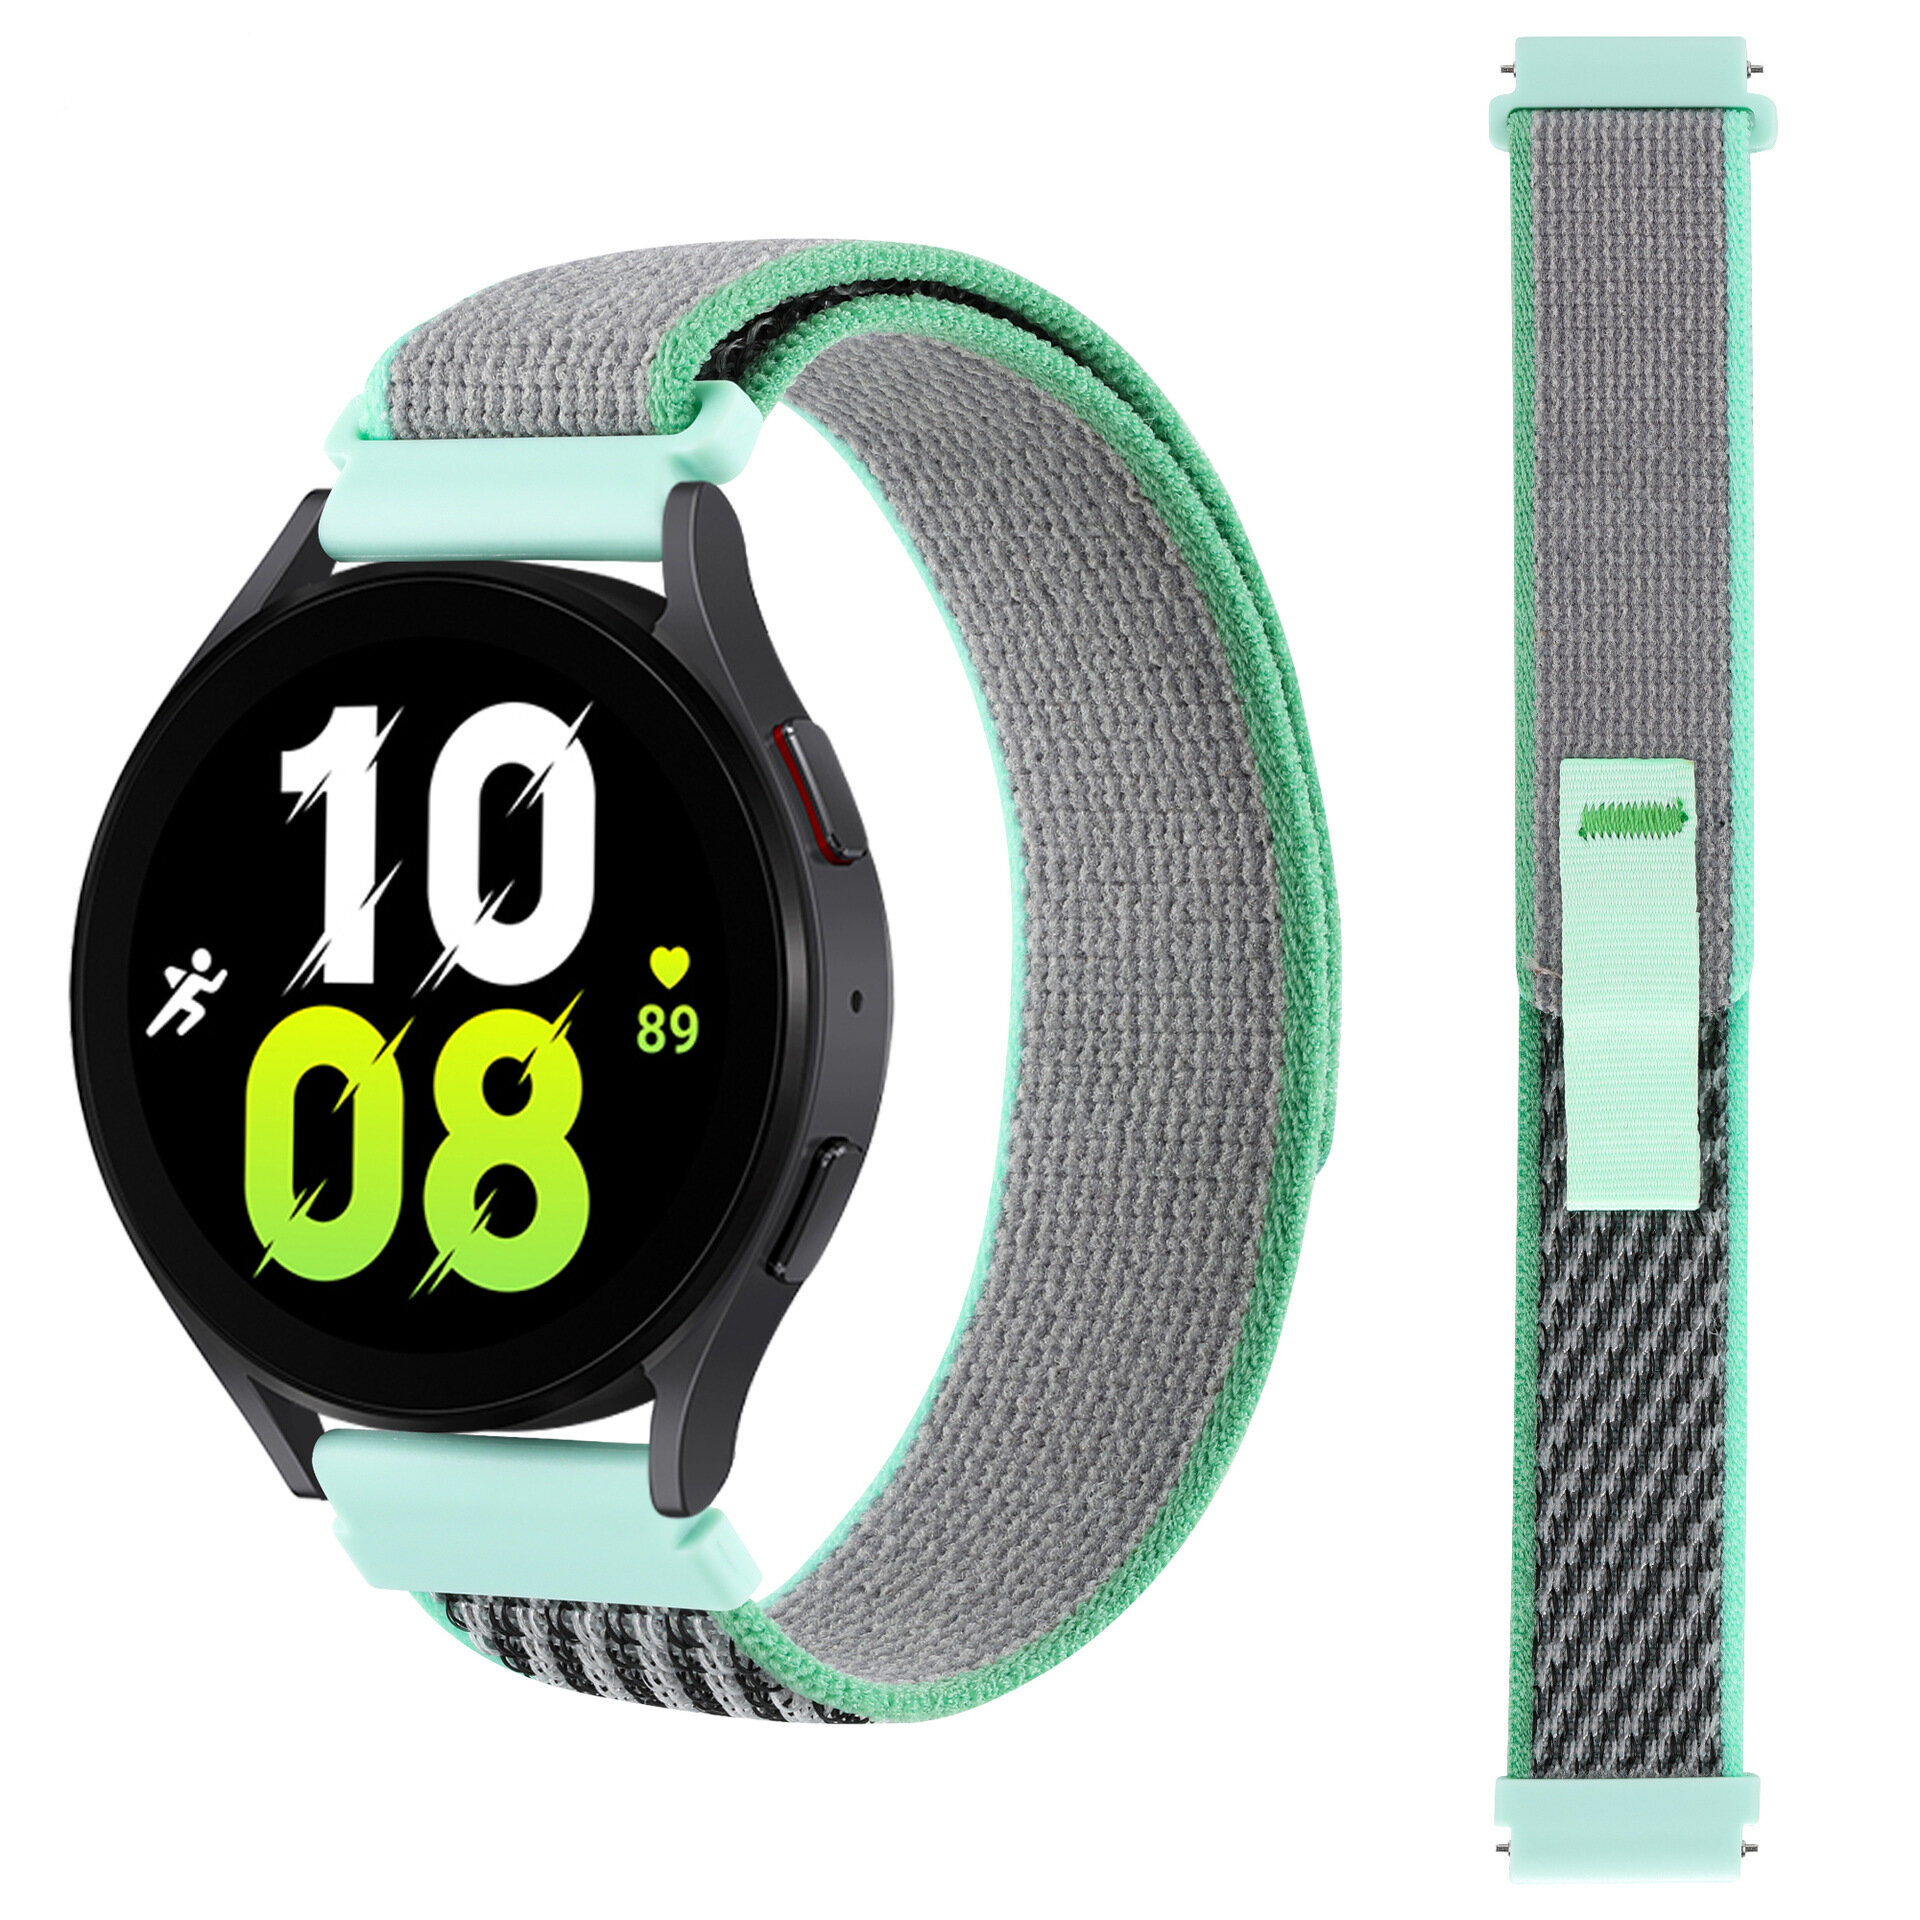 Ремешок нейлоновый Trail Loop для смарт-часов с креплением 22 мм Garmin, Samsung Galaxy Watch, Huawei Watch, Honor, Xiaomi Amazfit, 08 зеленый с серым